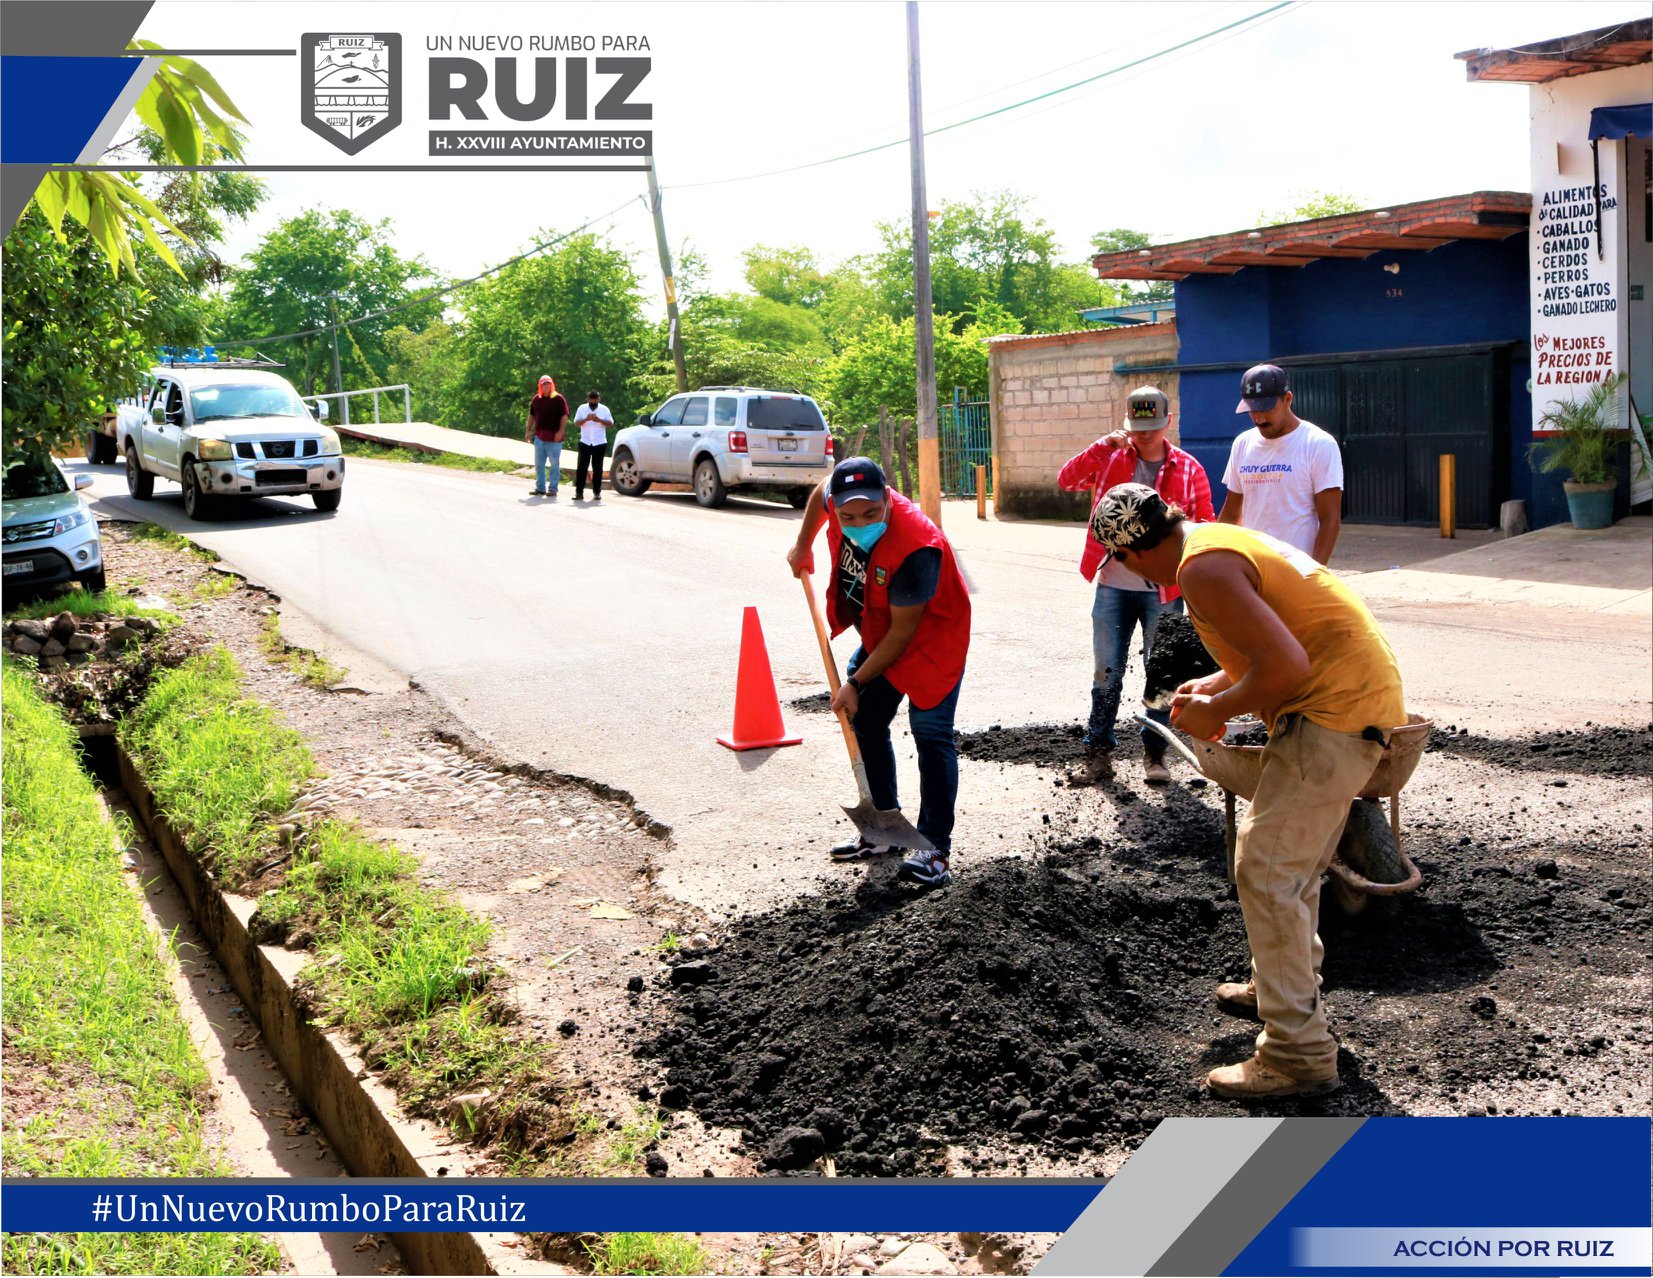 “son obras que traerán beneficio y justicia social para el Municipio”, agregó el alcalde Joao Torres.